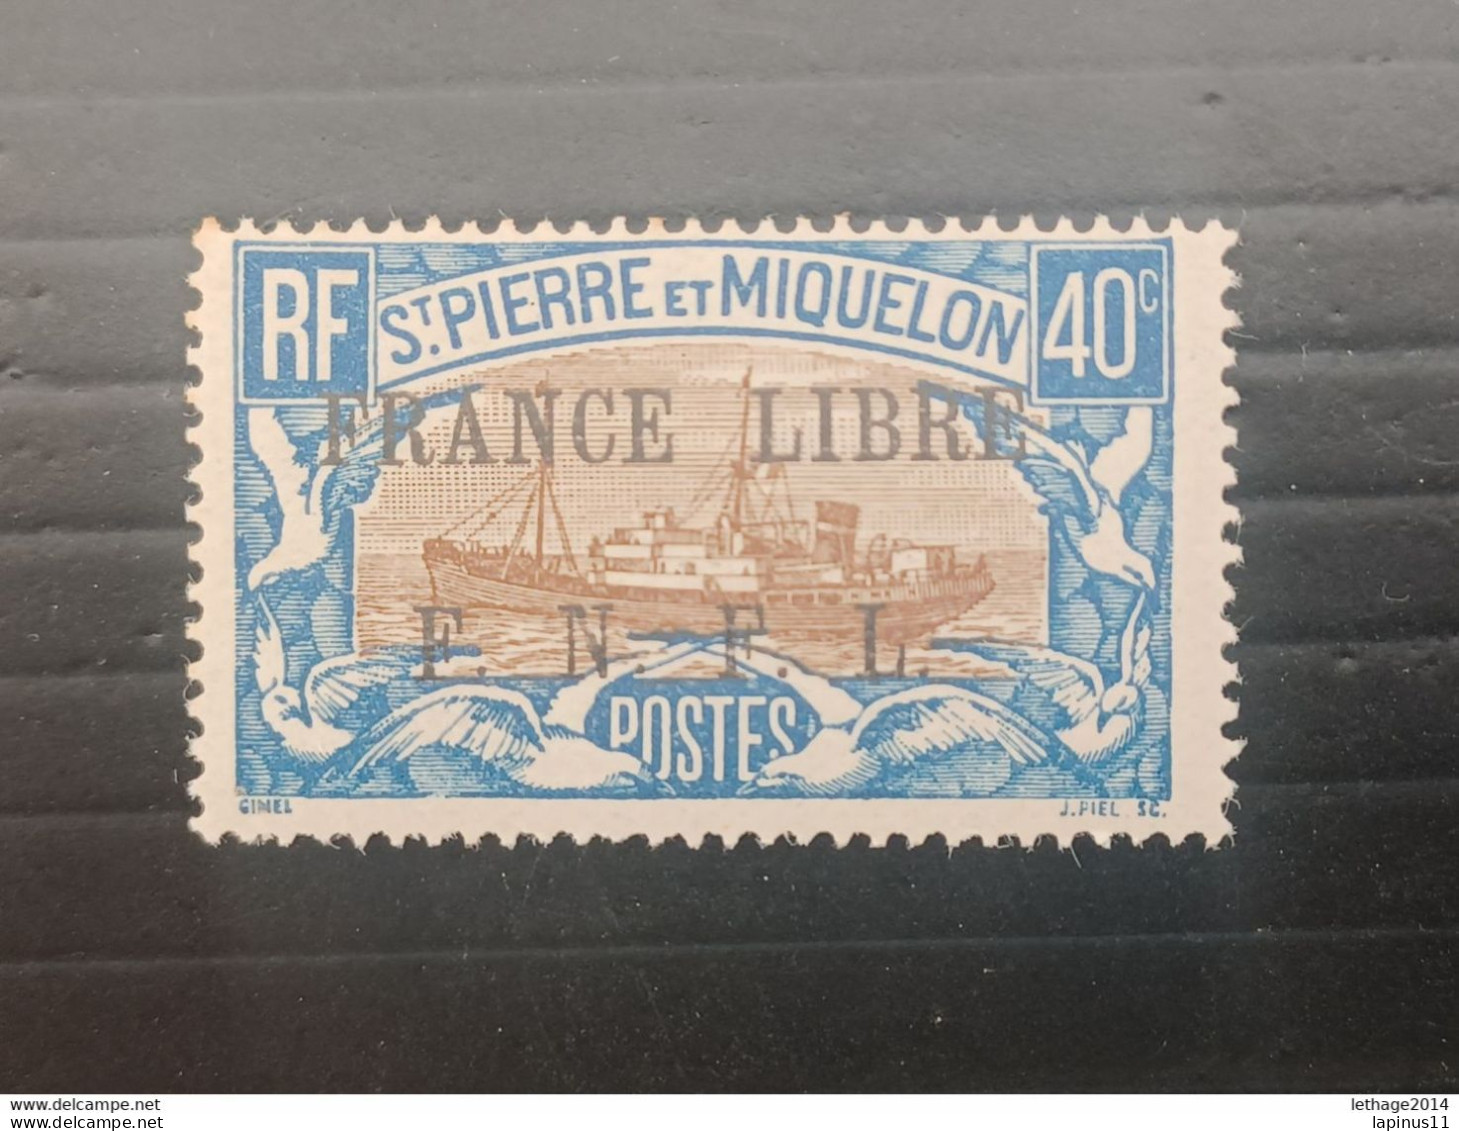 ST PIERRE ET MIQUELLON 1941 STAMPS OF 1922 OVERPRINT FRANCE LIBRE F N F L MNH - Nuevos